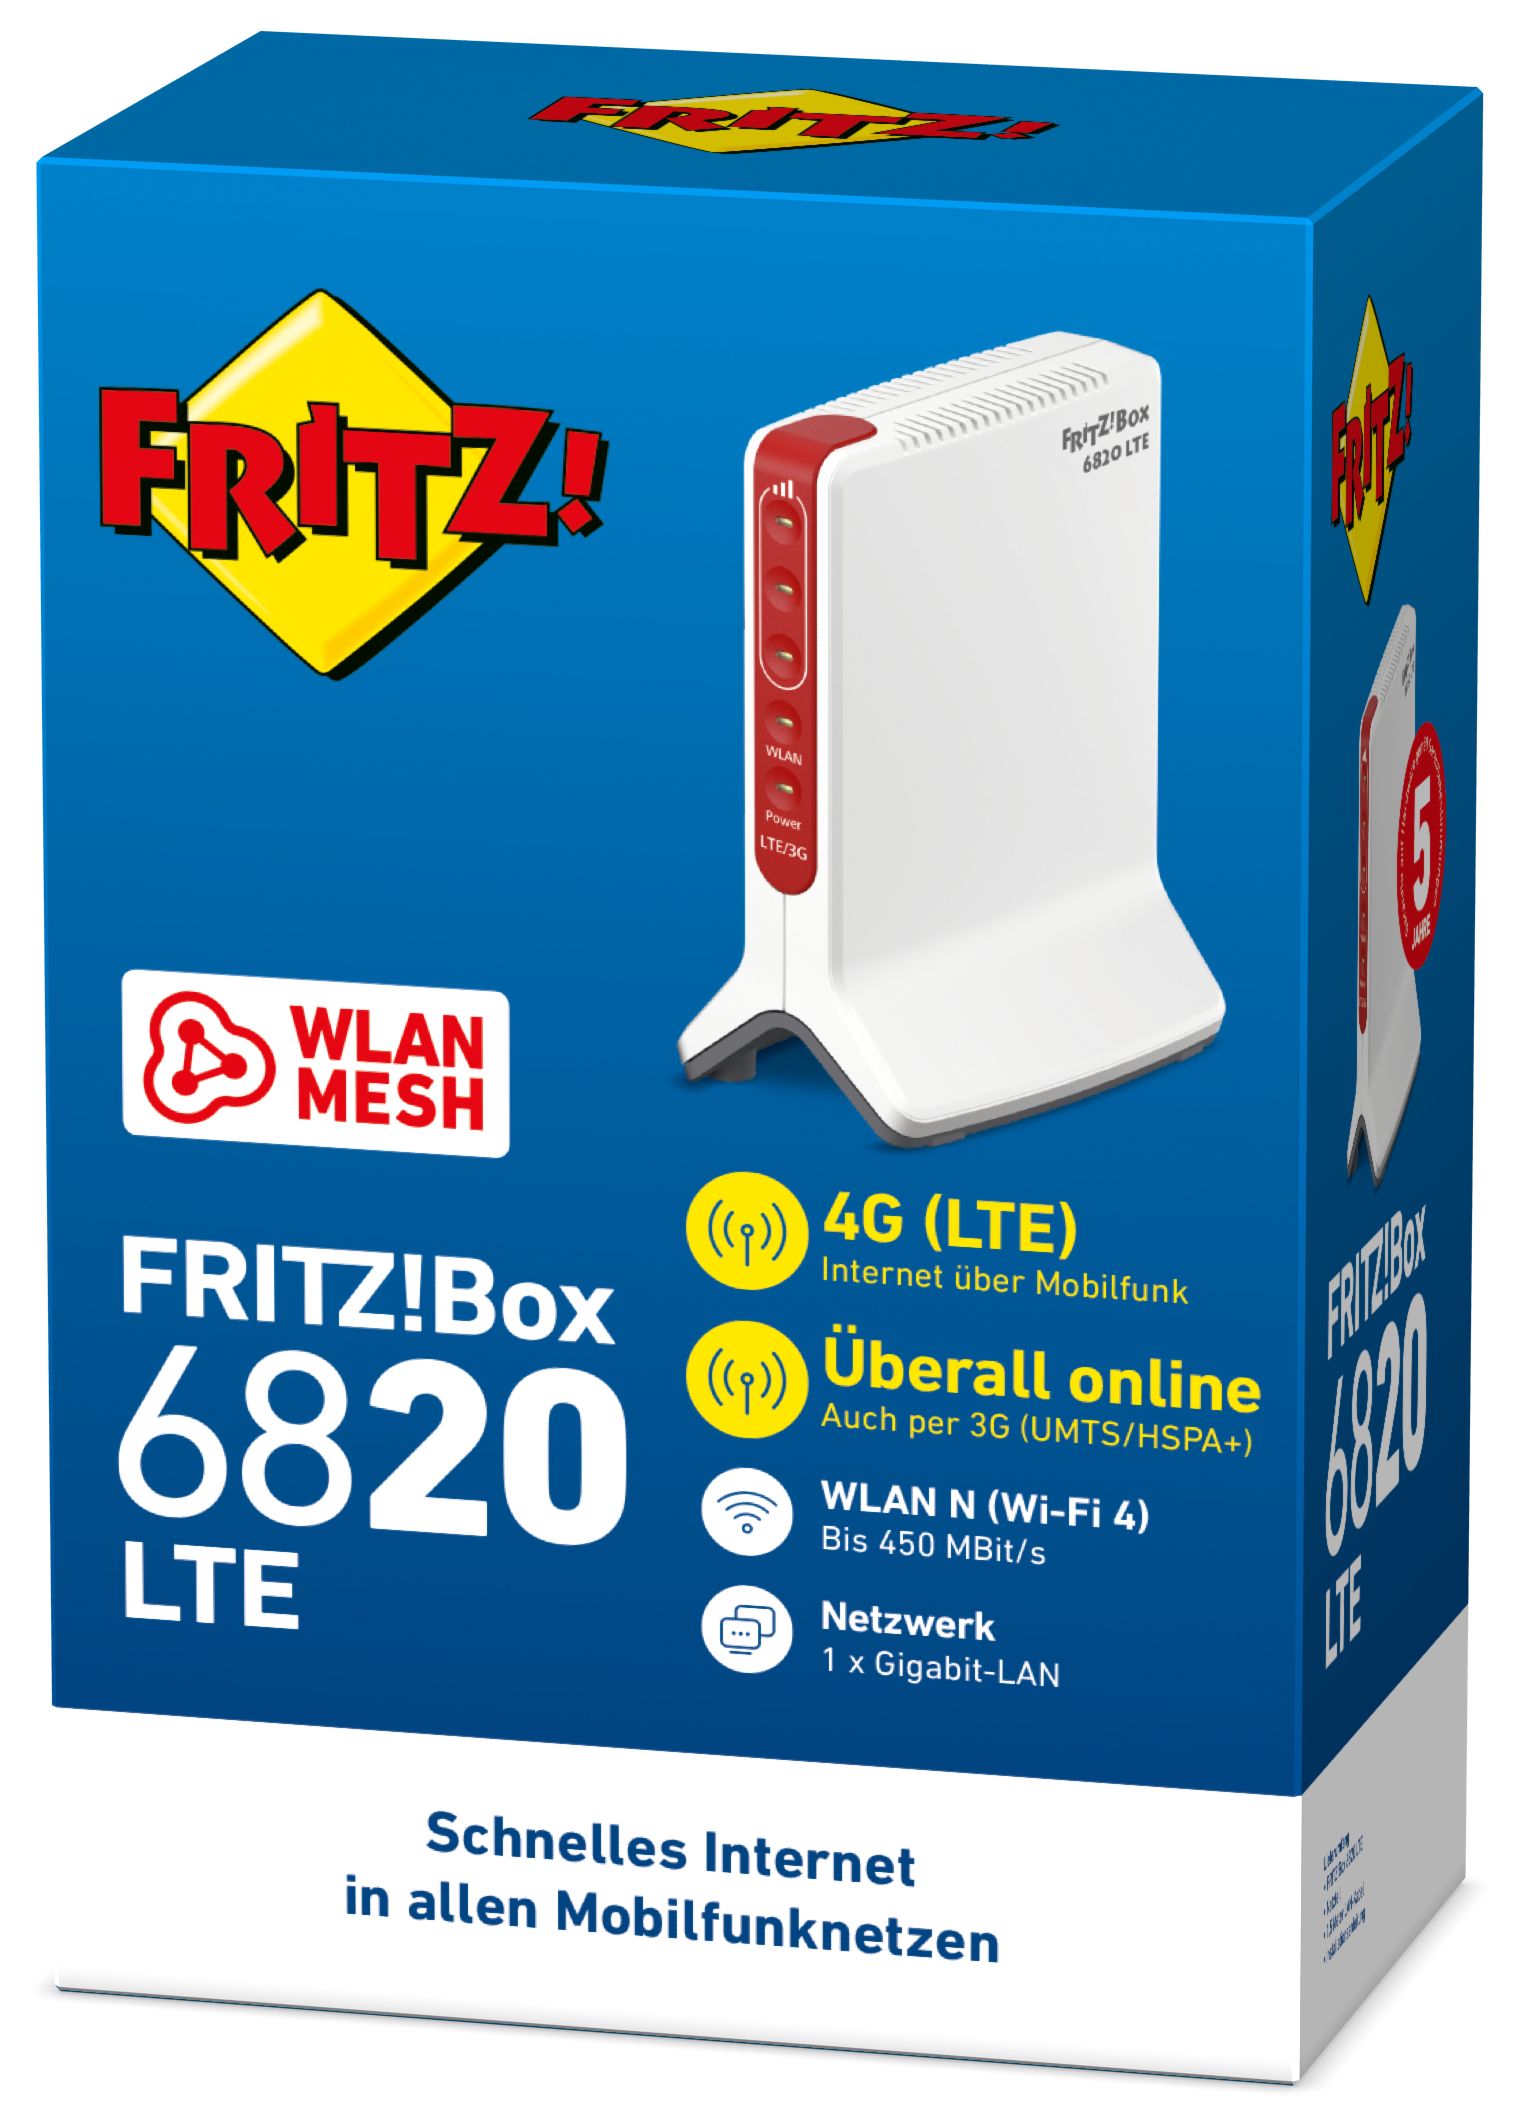 AVM FRITZ!Box 6820 LTE Mbit/s expert Einzelband 4 450 (802.11n) Router (2,4GHz) Technomarkt von Wi-Fi